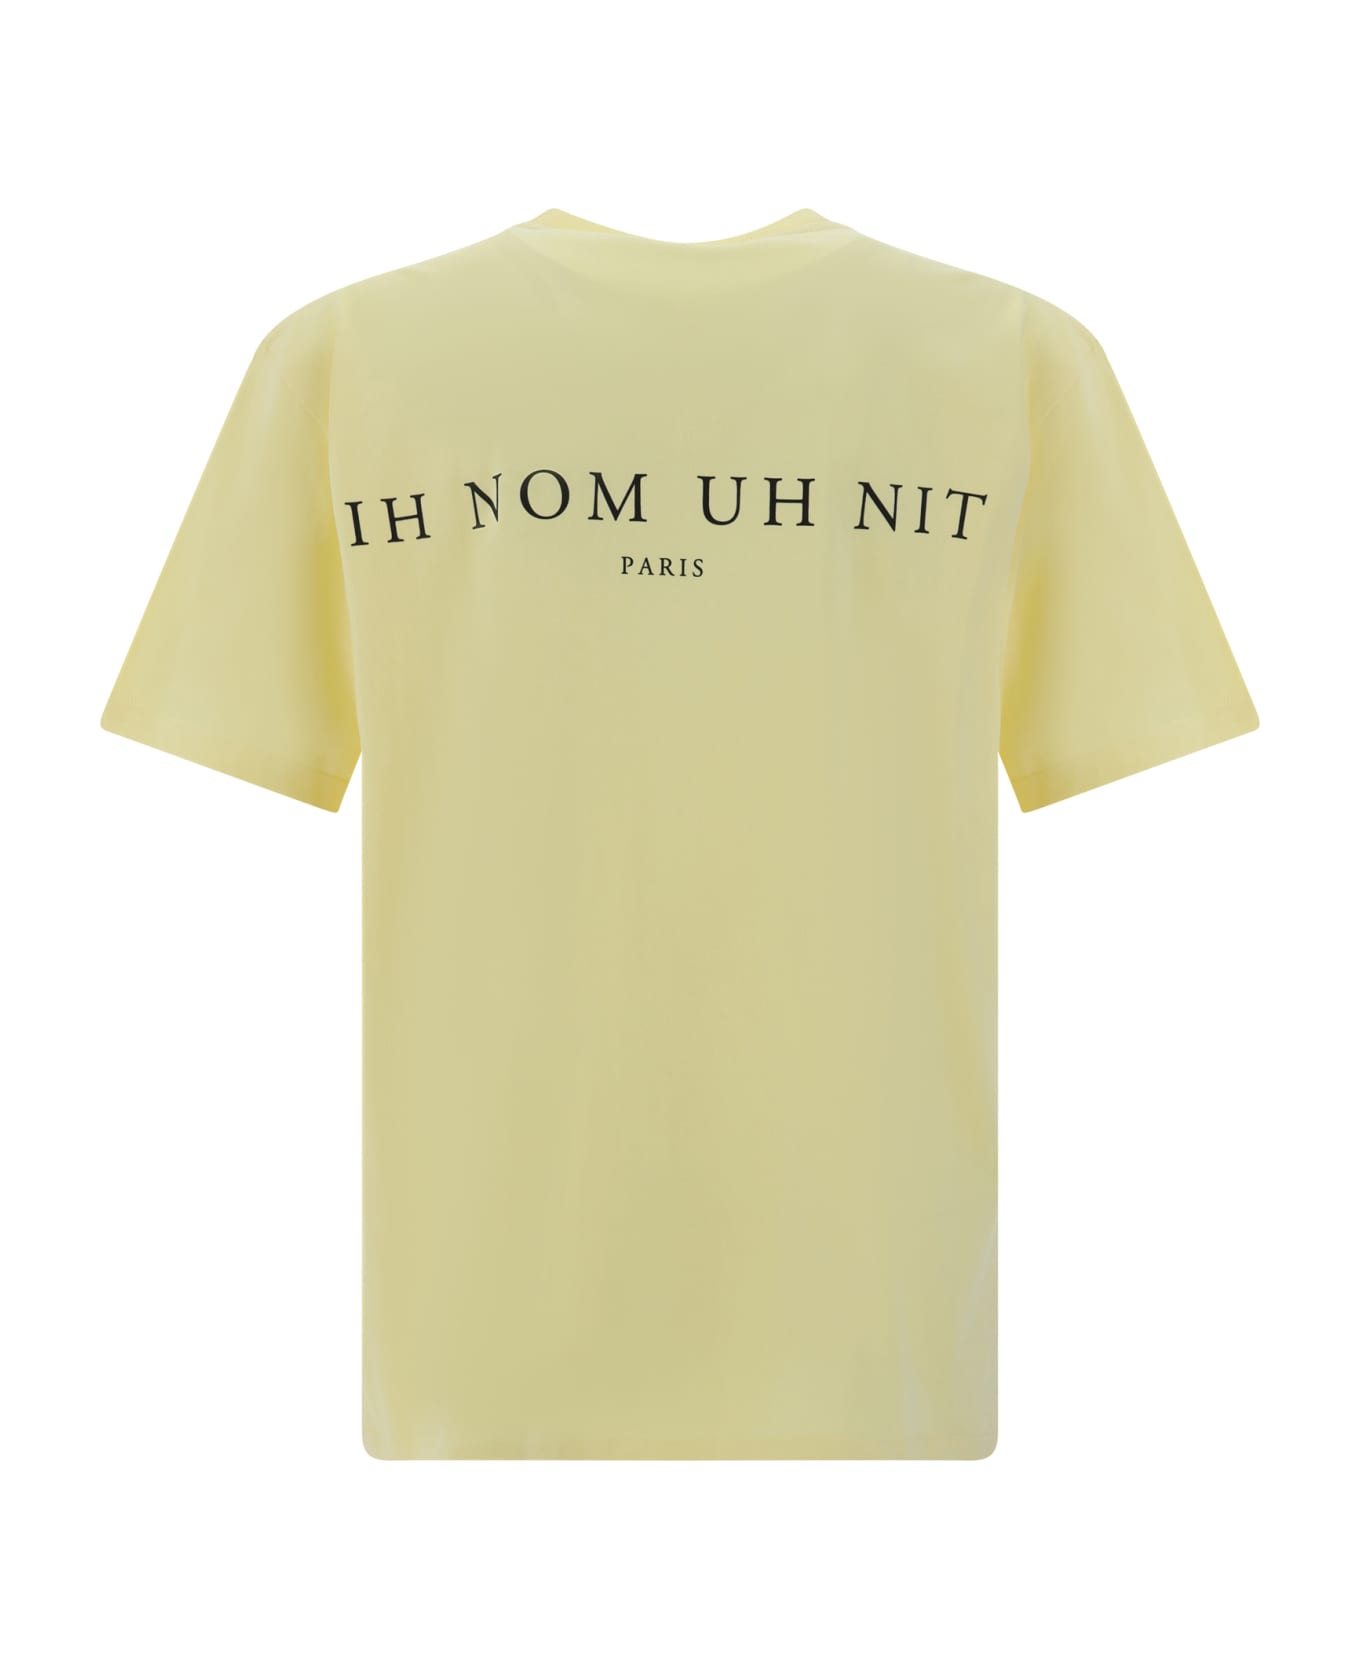 ih nom uh nit T-shirt - Yellow シャツ